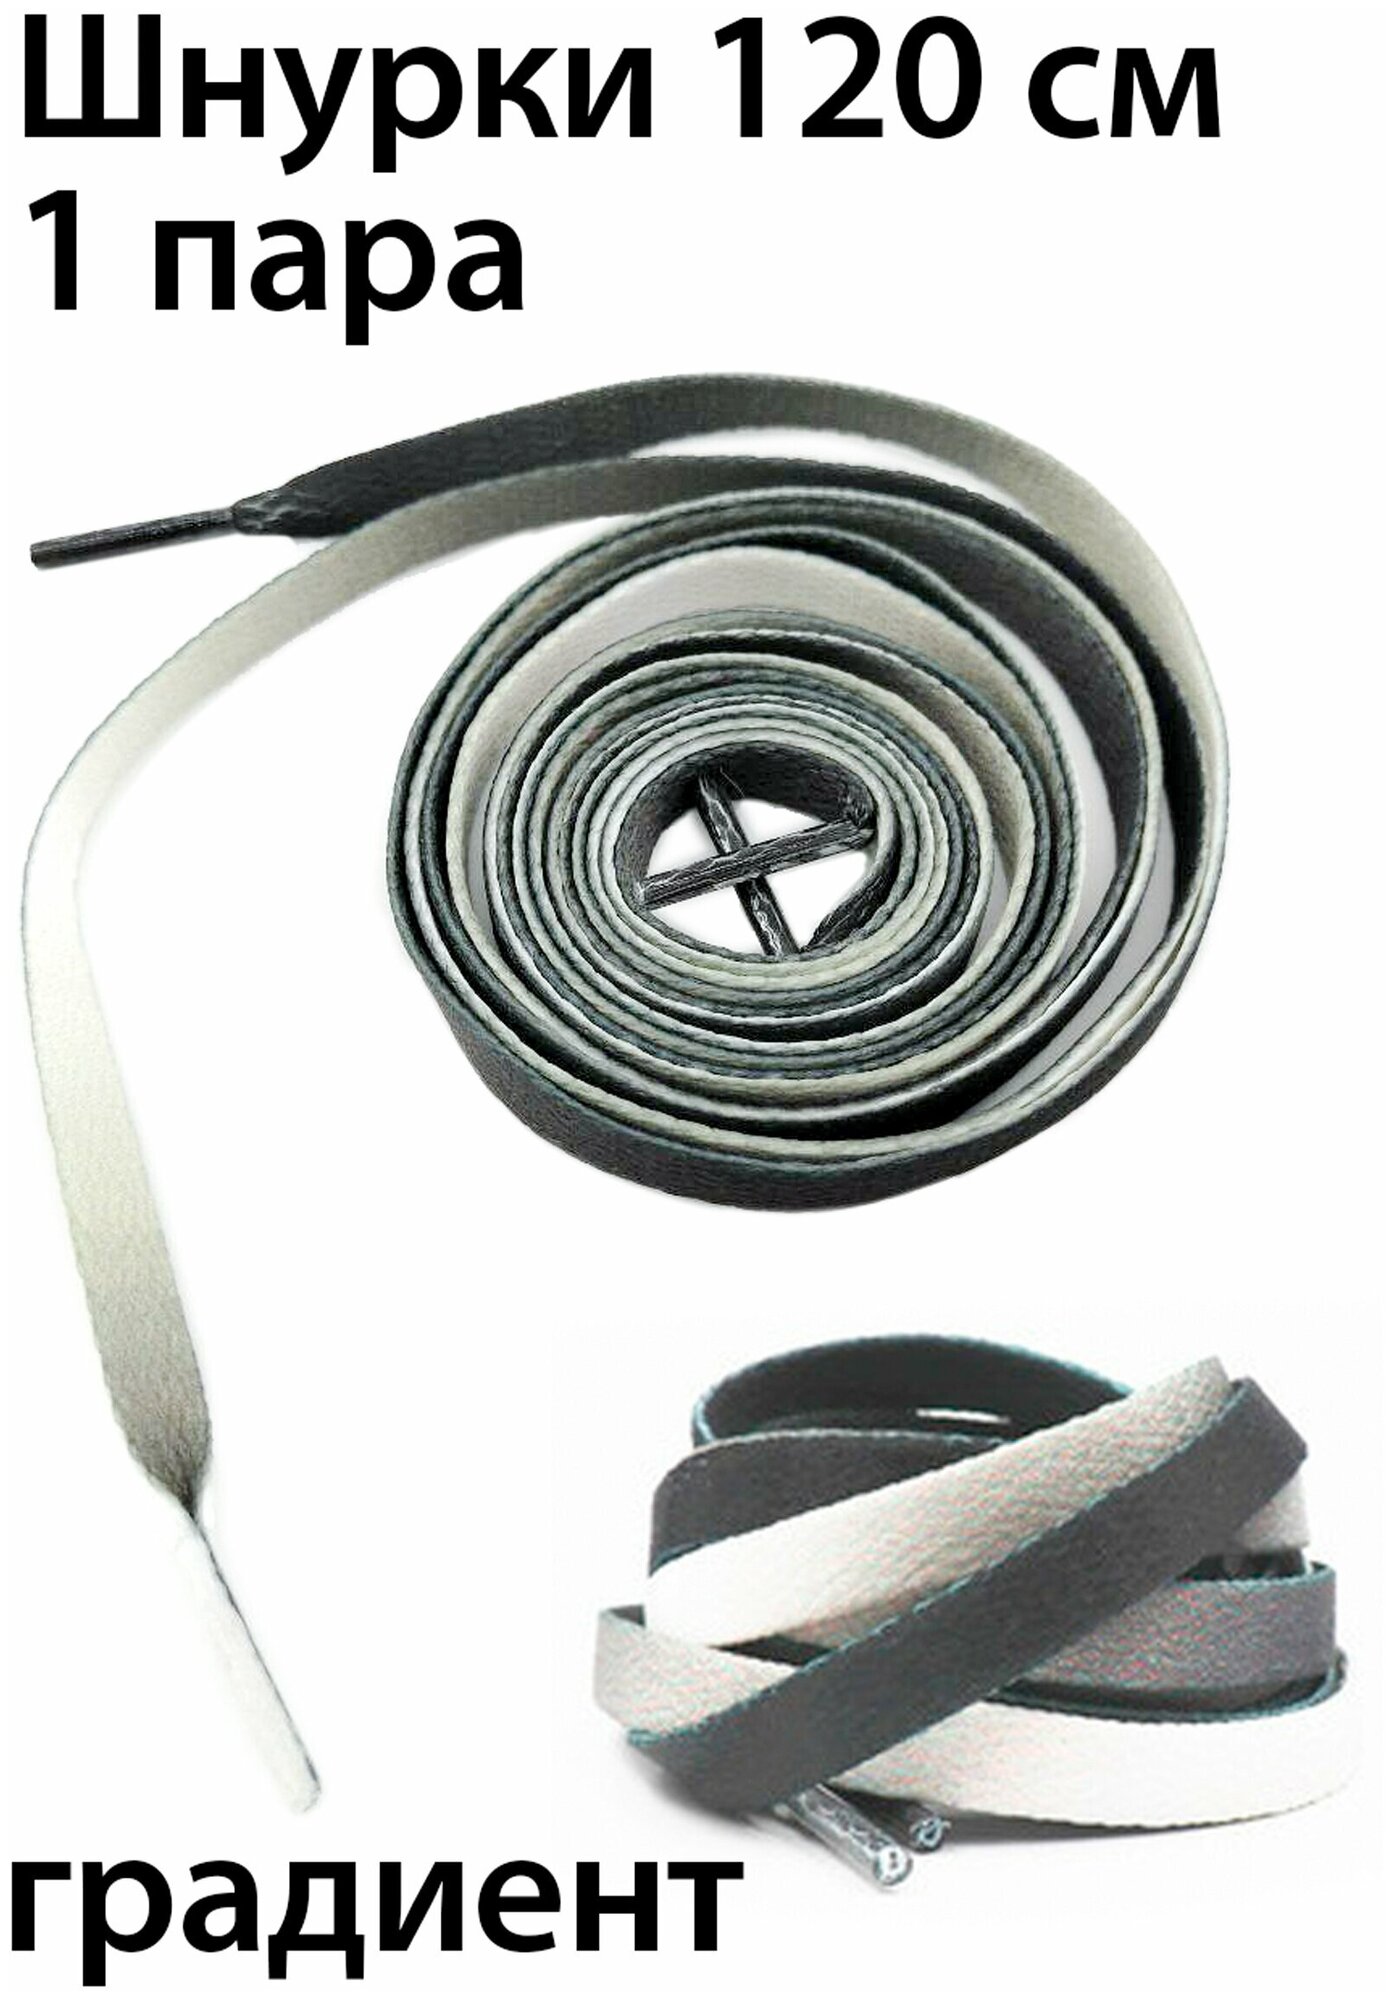 Шнурки текстильные 120 см / Шнурки для кроссовок плоские с рисунком Серый градиент